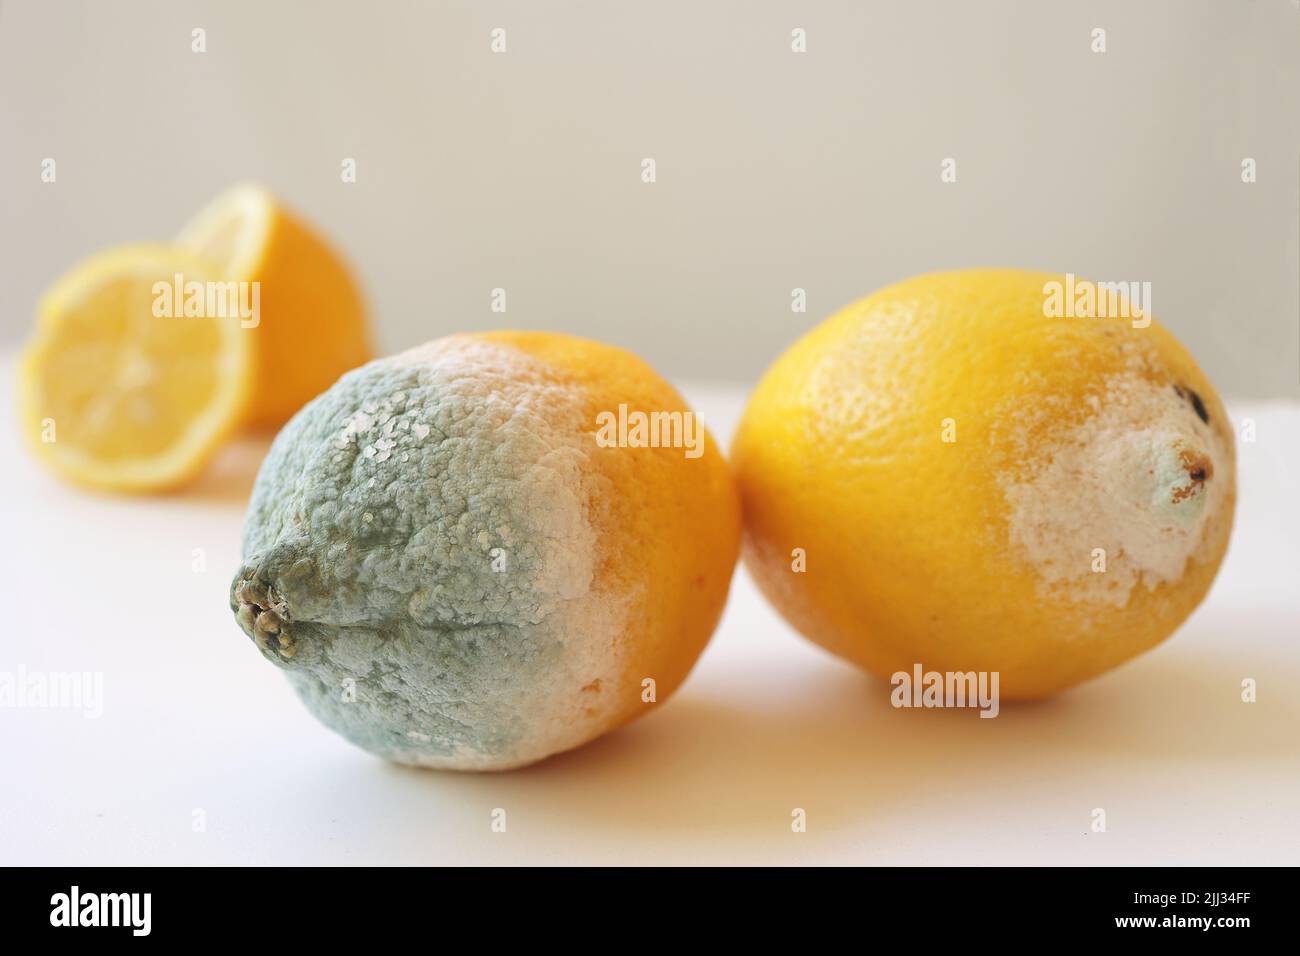 Muffa blu su limone giallo. Frutta rovinata marciante con muffa su sfondo bianco. Muffa blu-verde sugli agrumi. Limone con muffa e limone fresco su Foto Stock